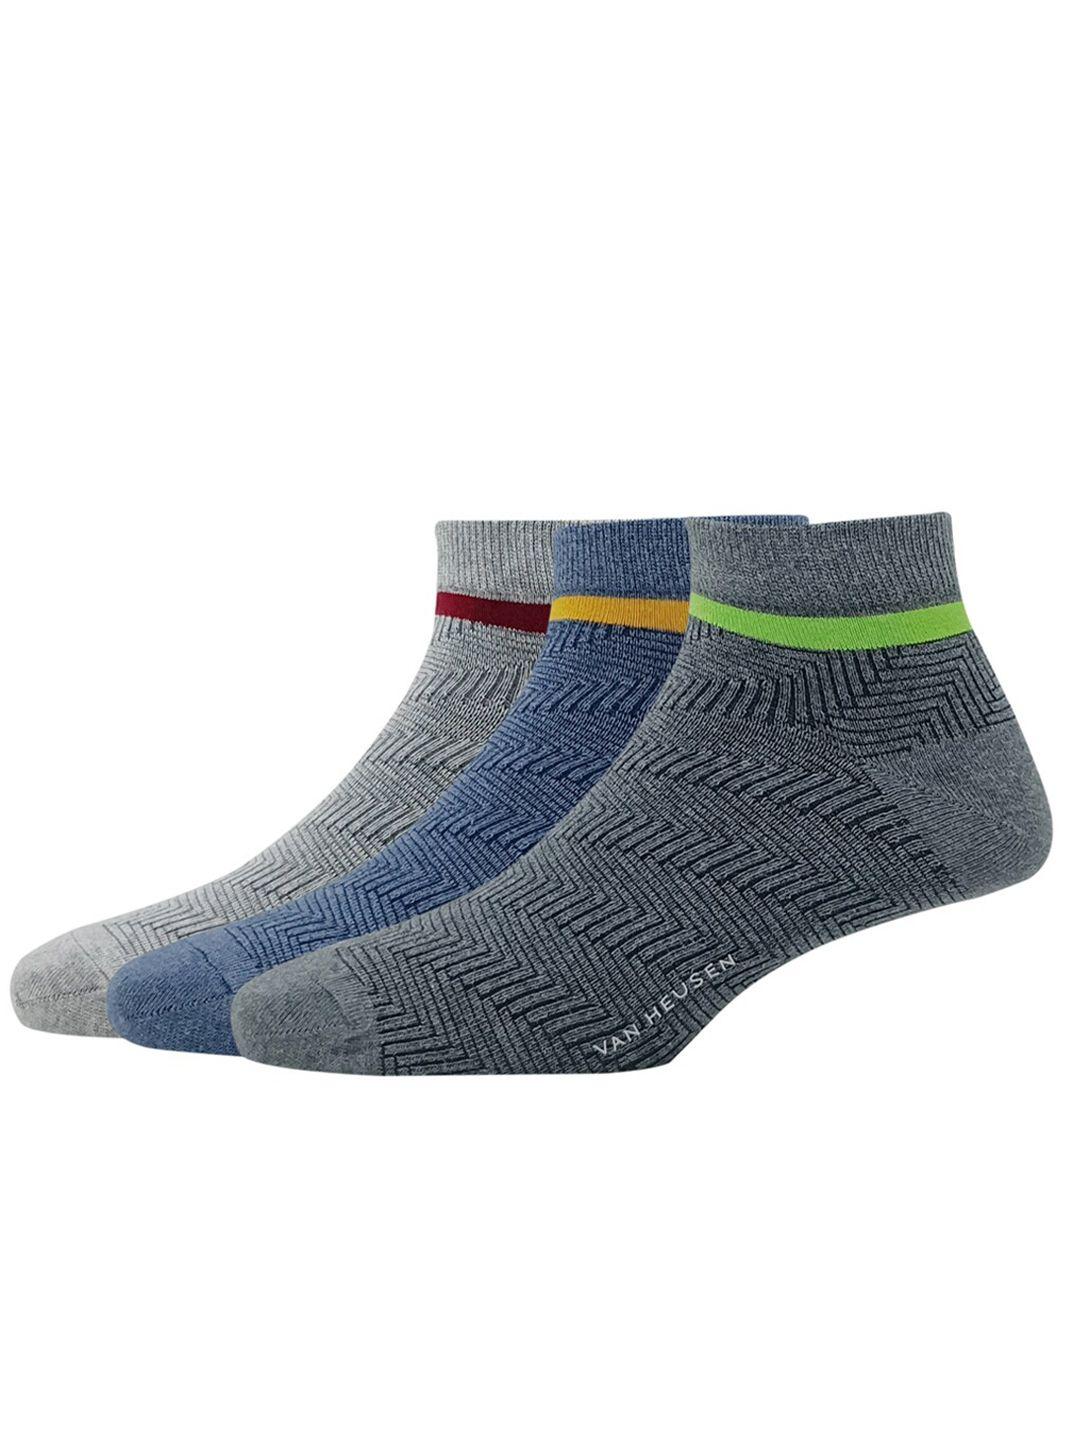 van-heusen-men-pack-of-3-patterned-ankle-length-socks